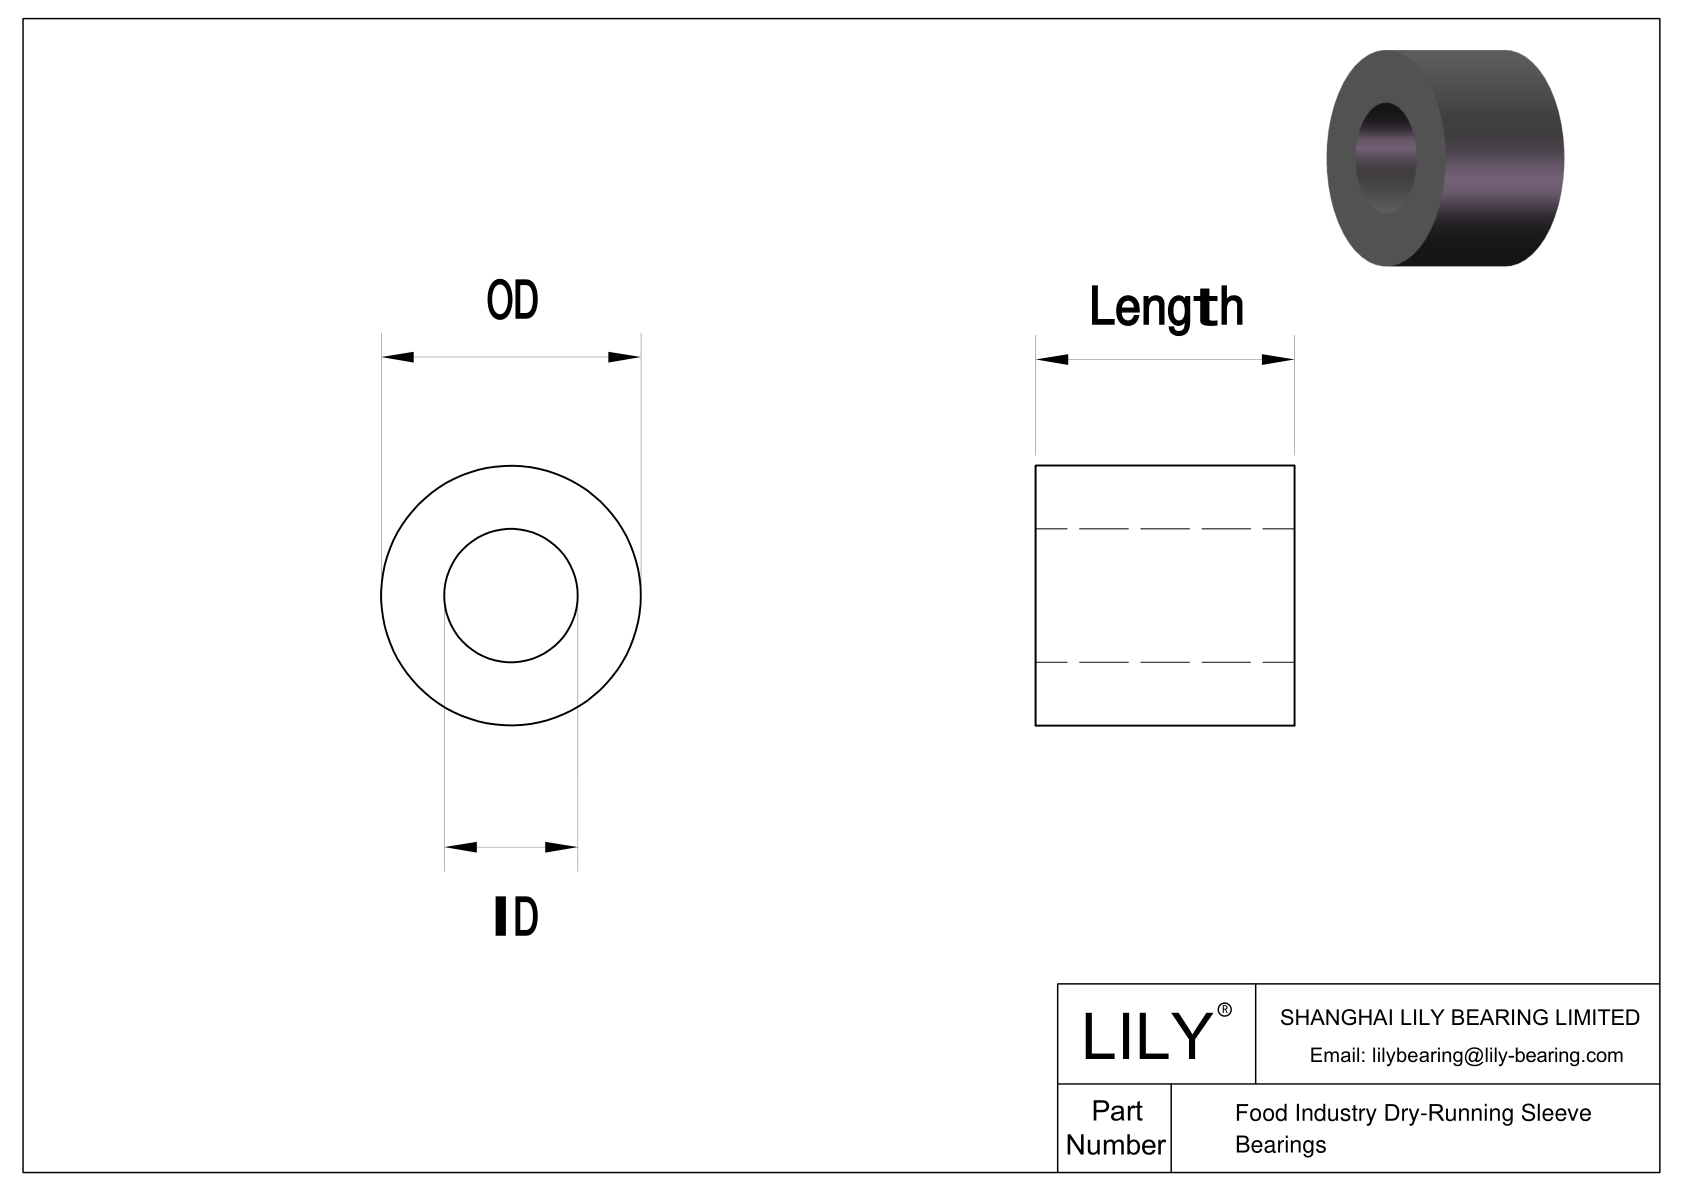 57785K16 Food Industry Dry-Running Sleeve Bearings cad drawing